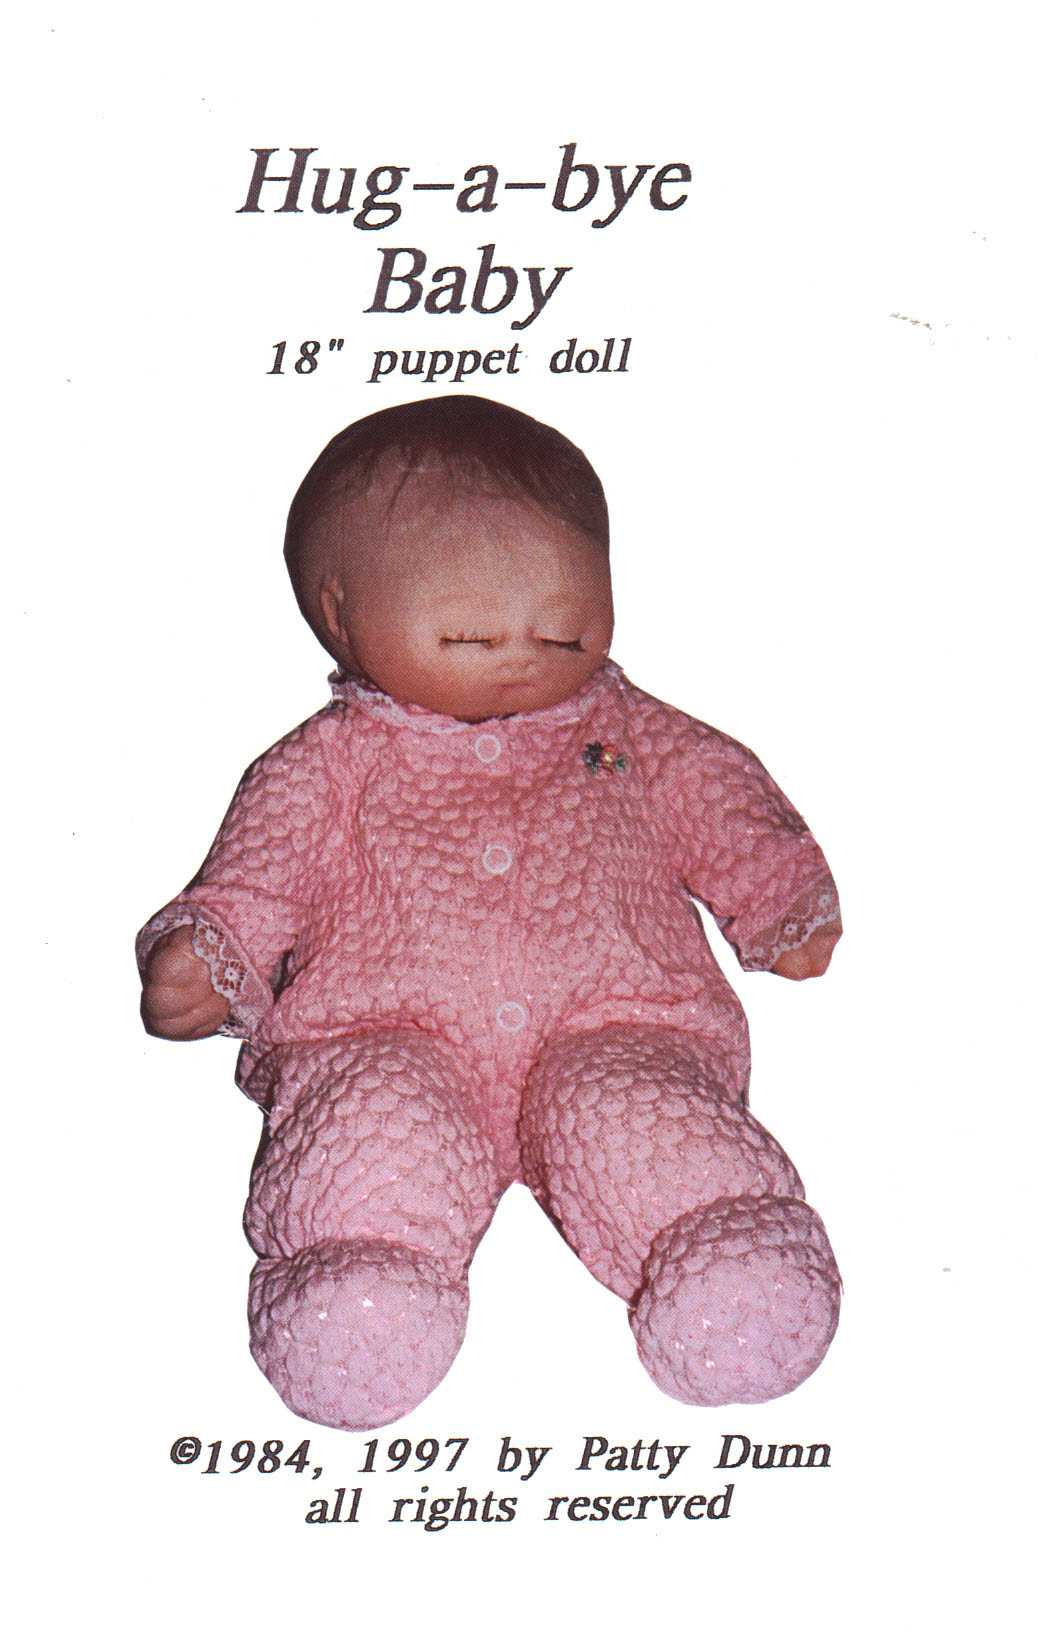 Patty Dunn Stuffed Toy - Hug-a-bye Baby Size: 18 Uncut Sewing Pattern